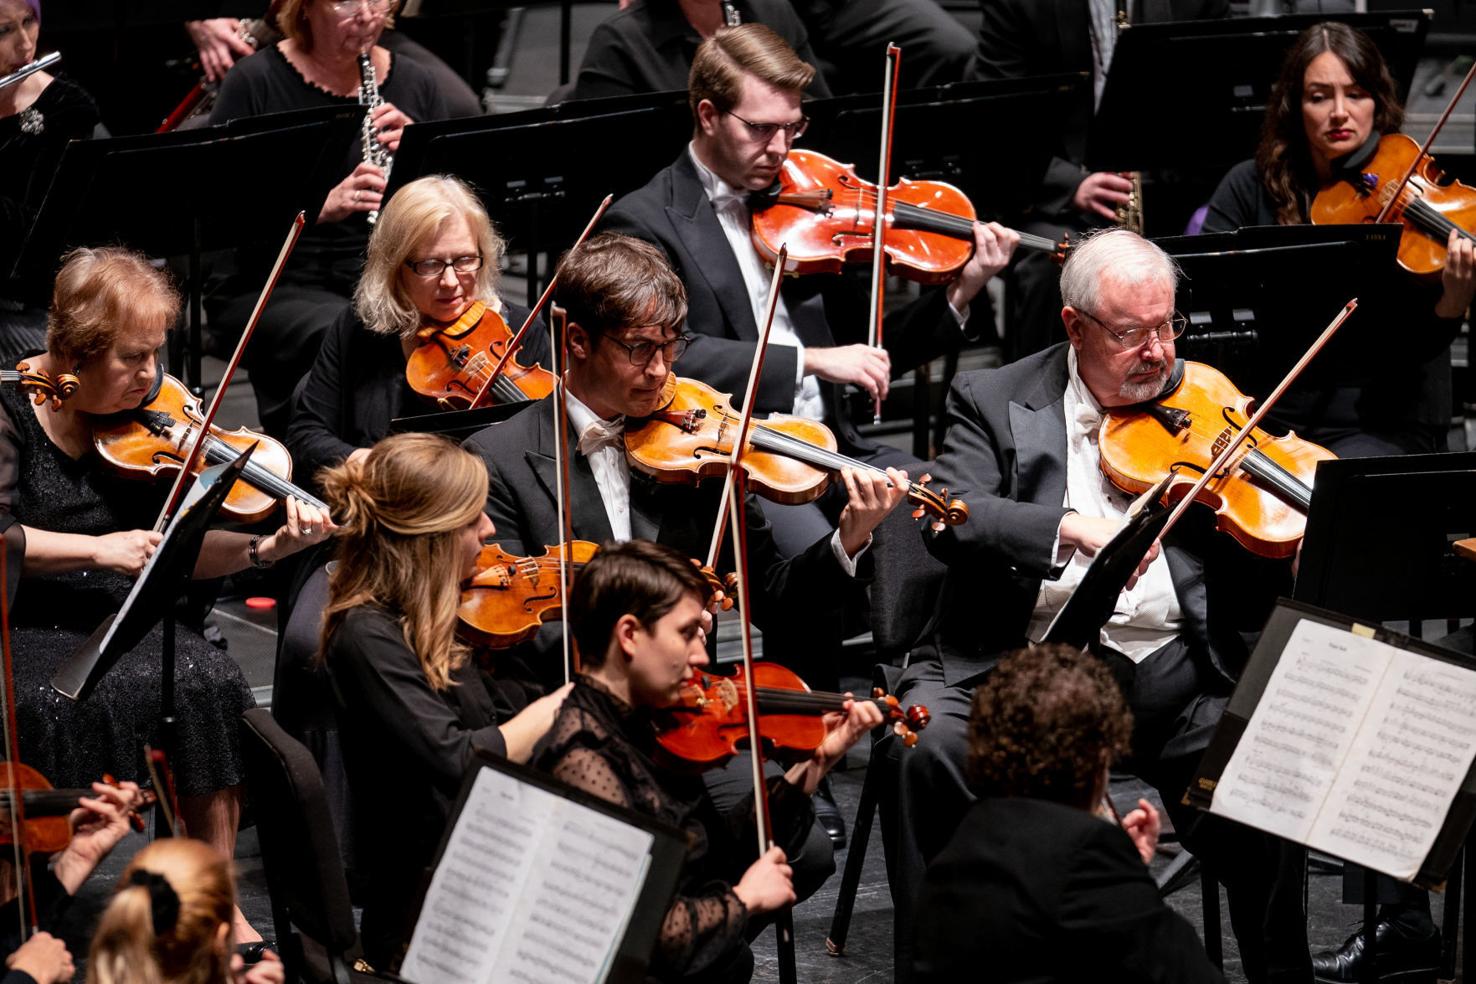 WV Symphony returns with a streaming show Nov. 15 | News | loganbanner.com